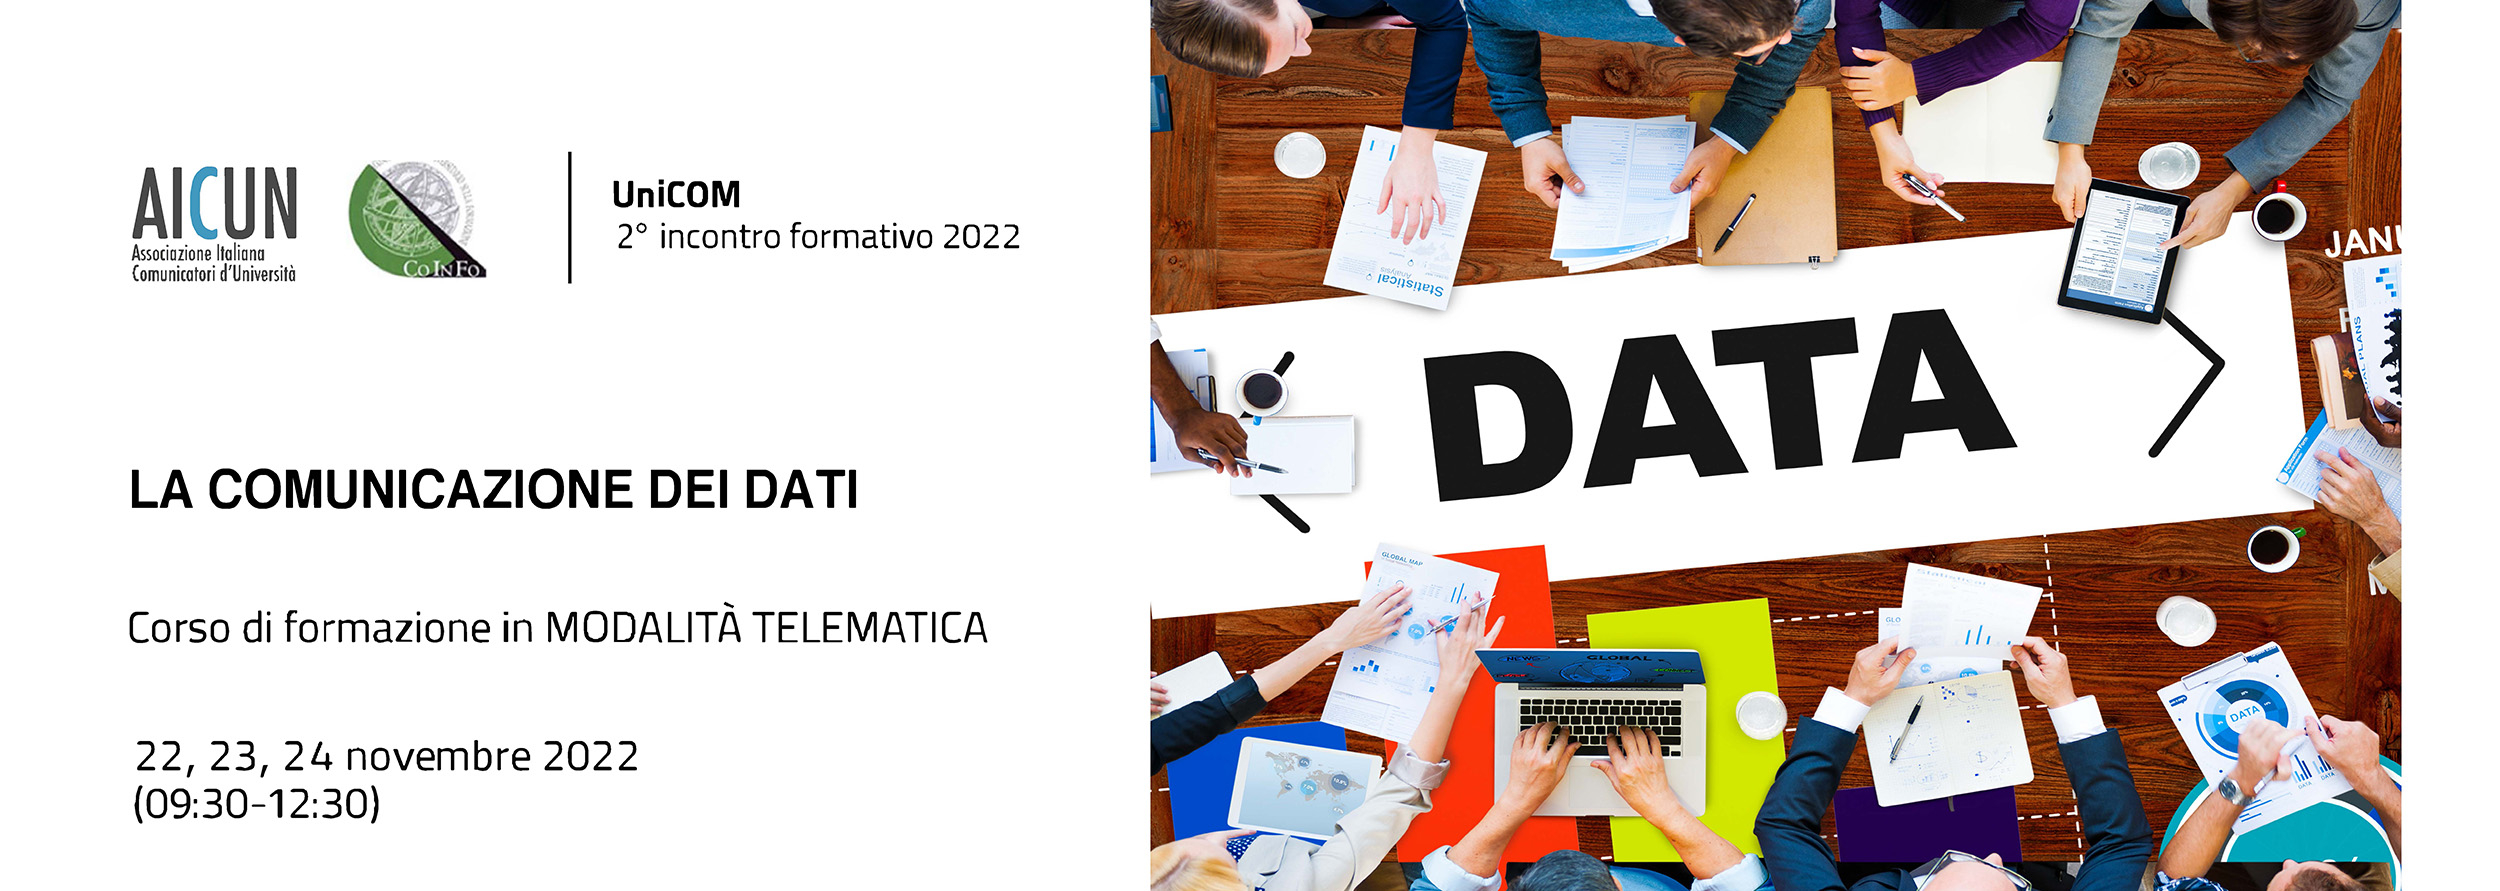 Corso formazione UNICOM sulla Comunicazione dei dati 22-24 novembre 2022